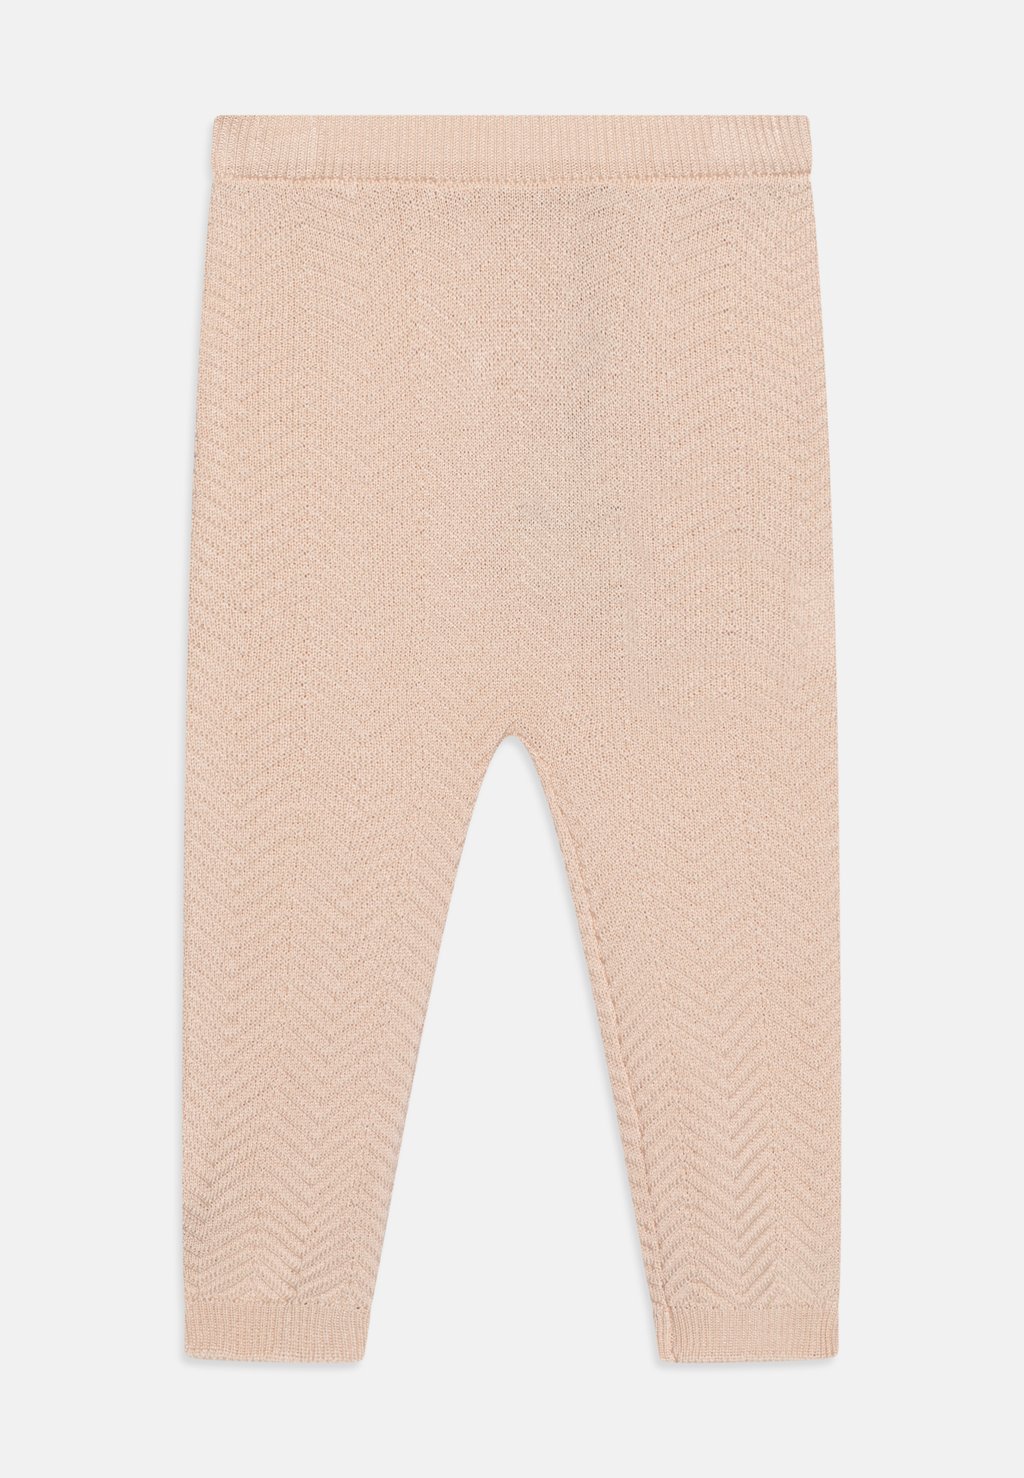 штанишки и шорты marmar copenhagen леггинсы в рубчик Леггинсы MarMar Copenhagen, розовый